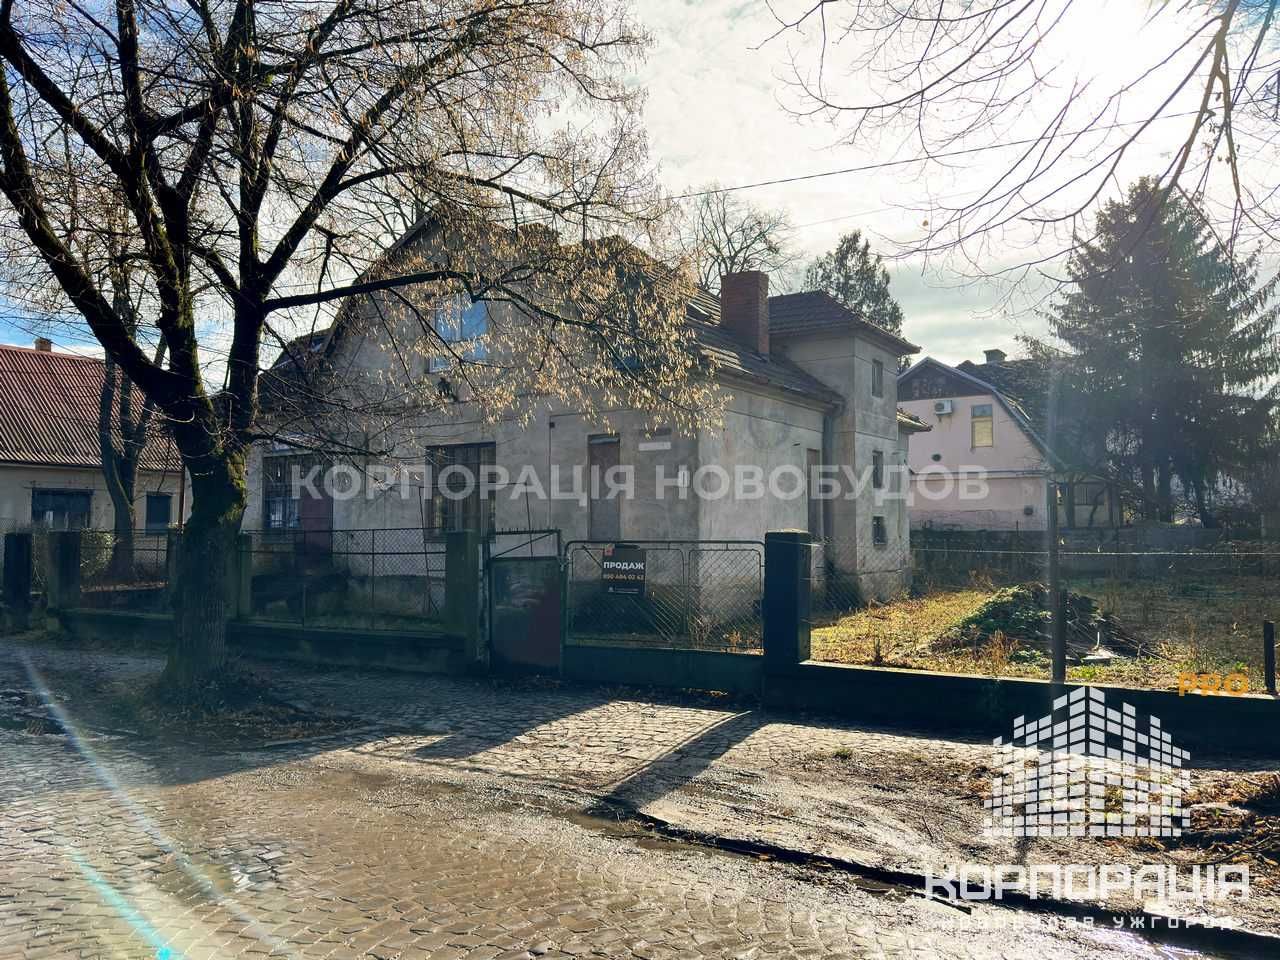 Продаж будинку в історичному центрі міста, поруч зі Слов'янською наб.